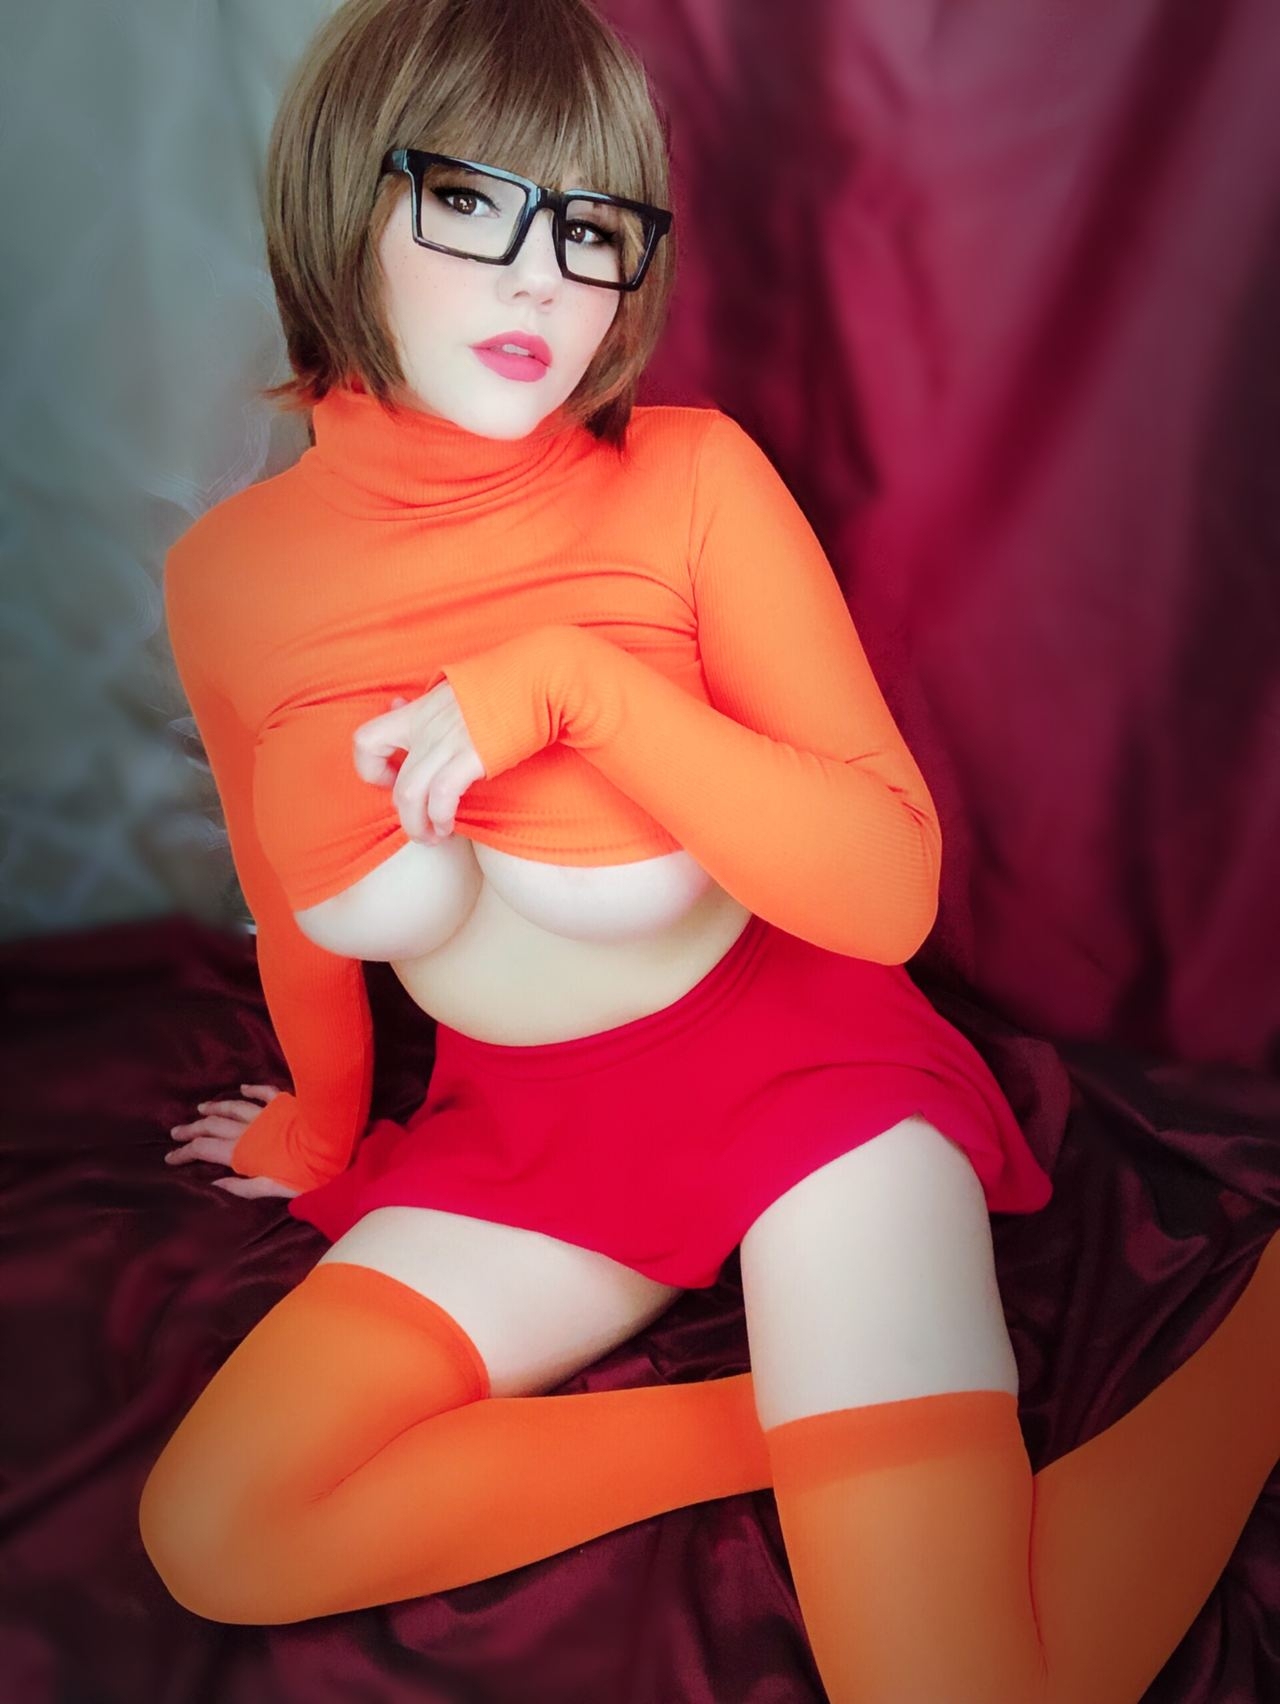 Kobaebeefboo - Velma Dinkley 4